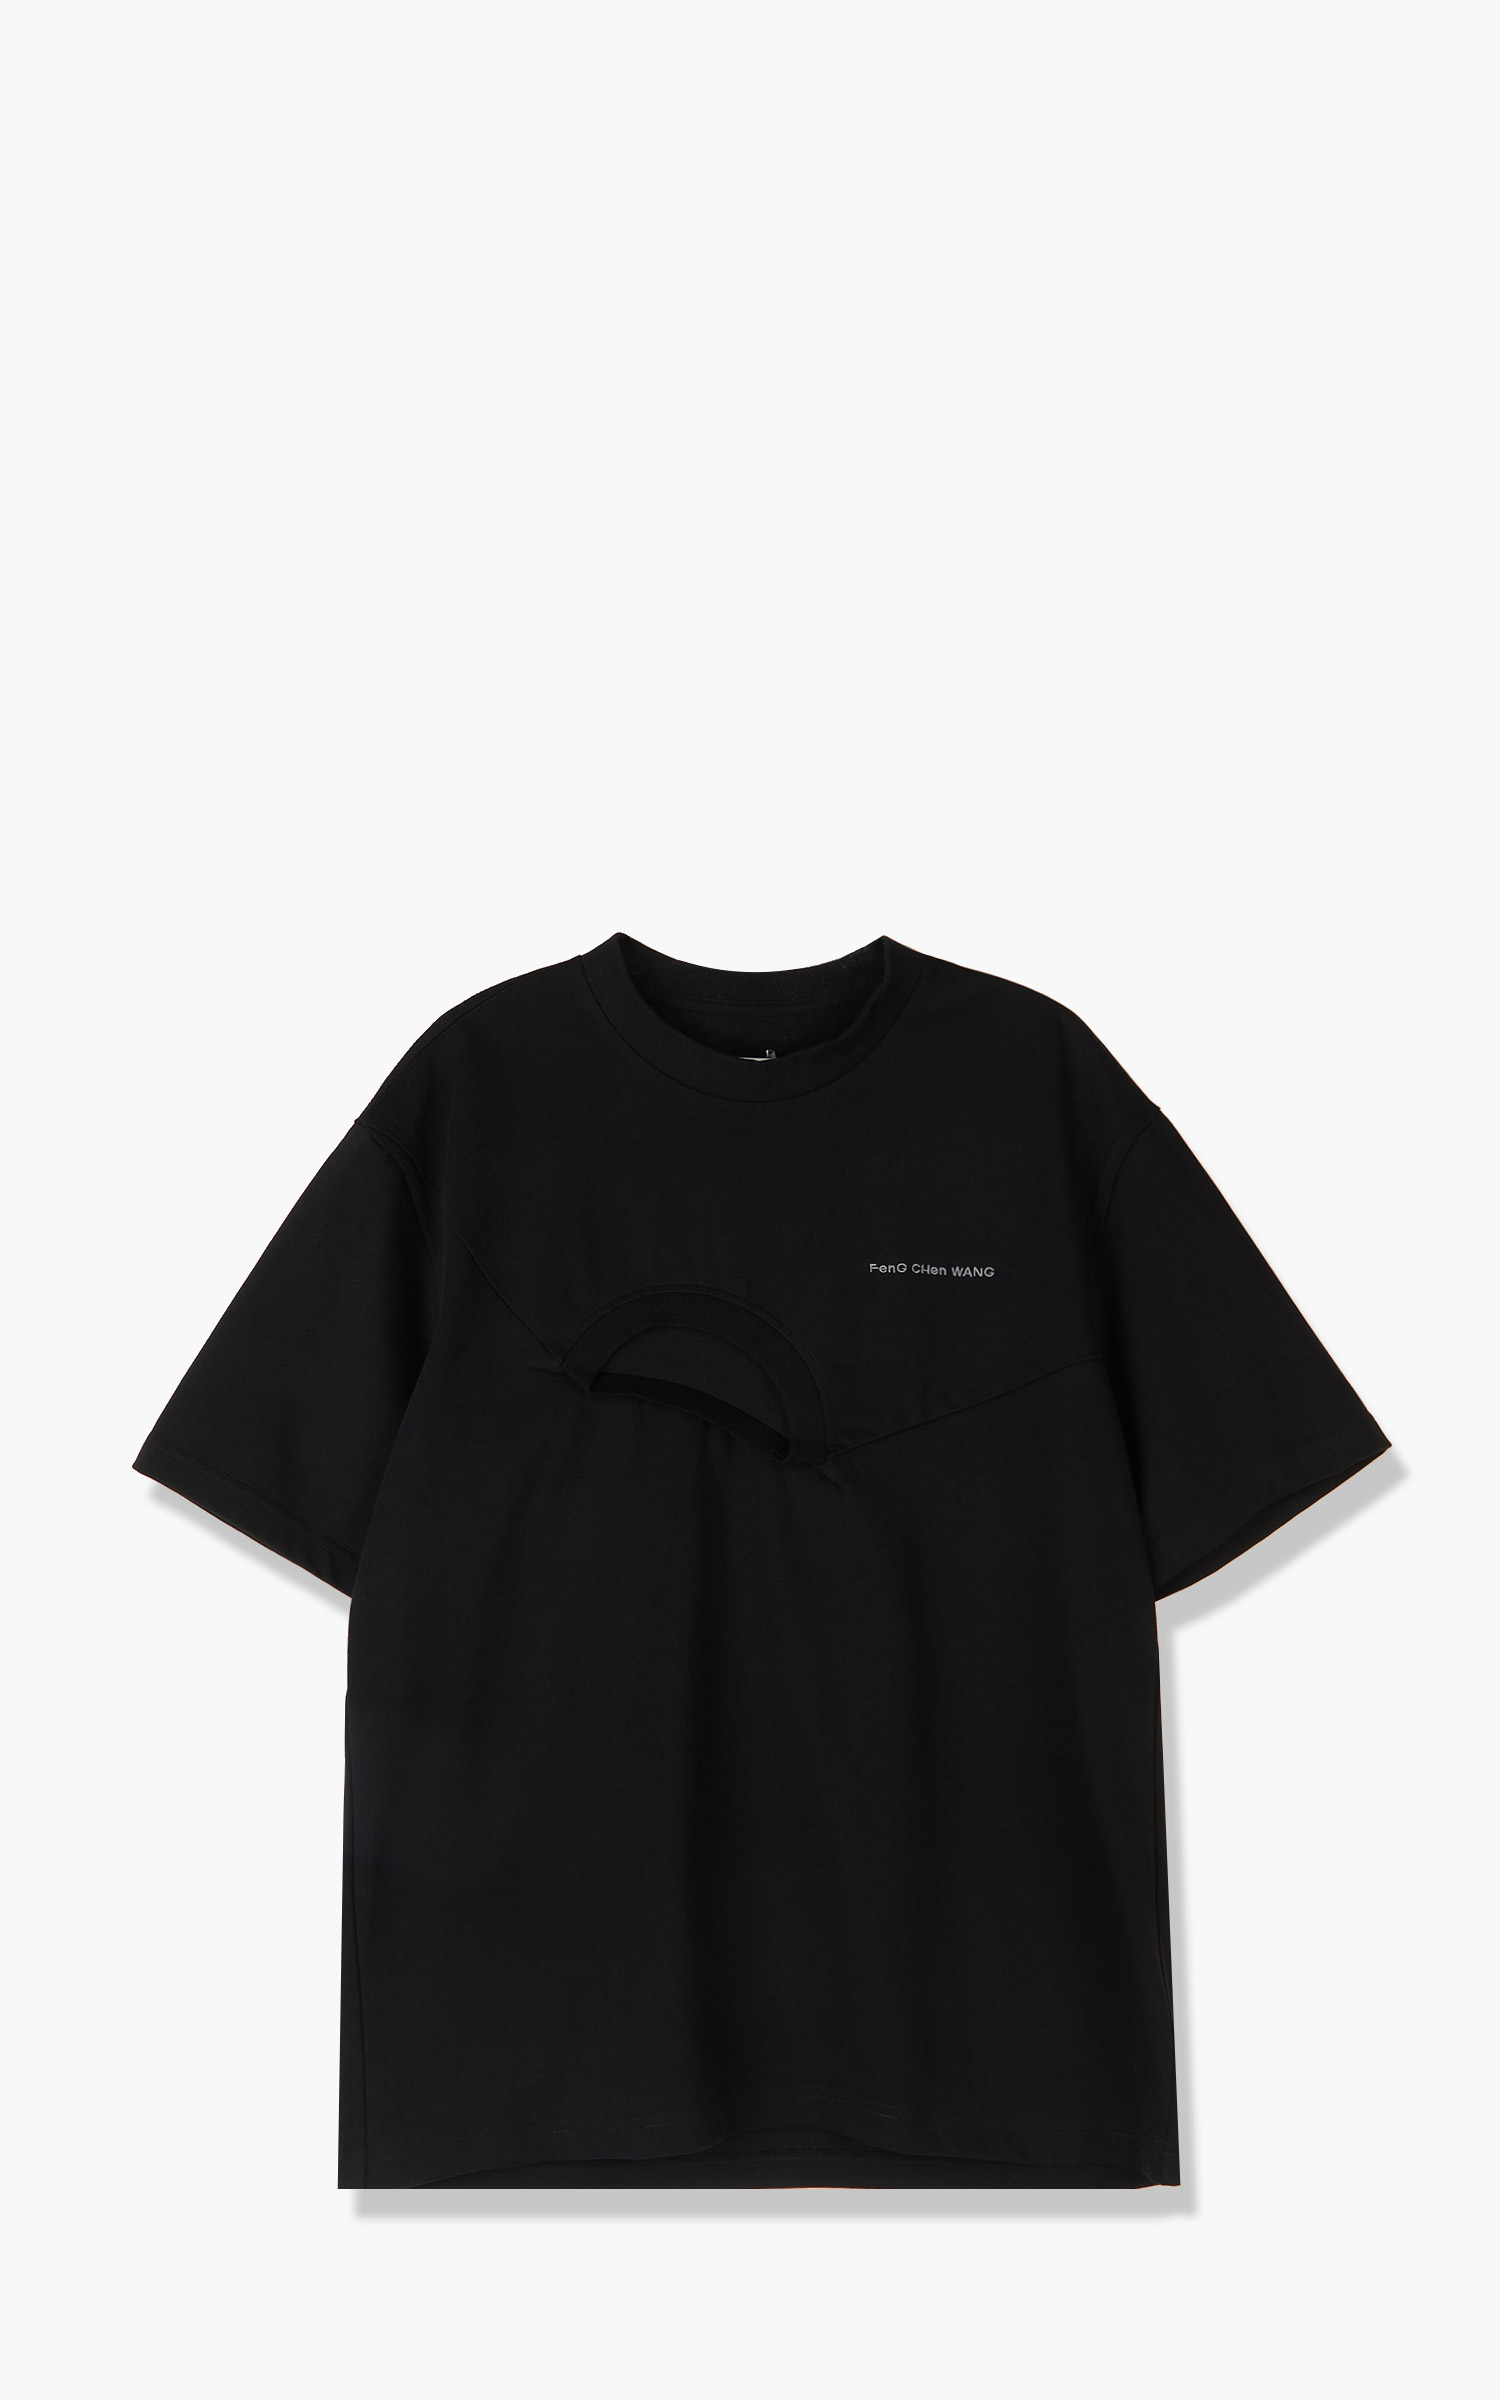 Feng Chen Wang Panelled Collar Shirt Black